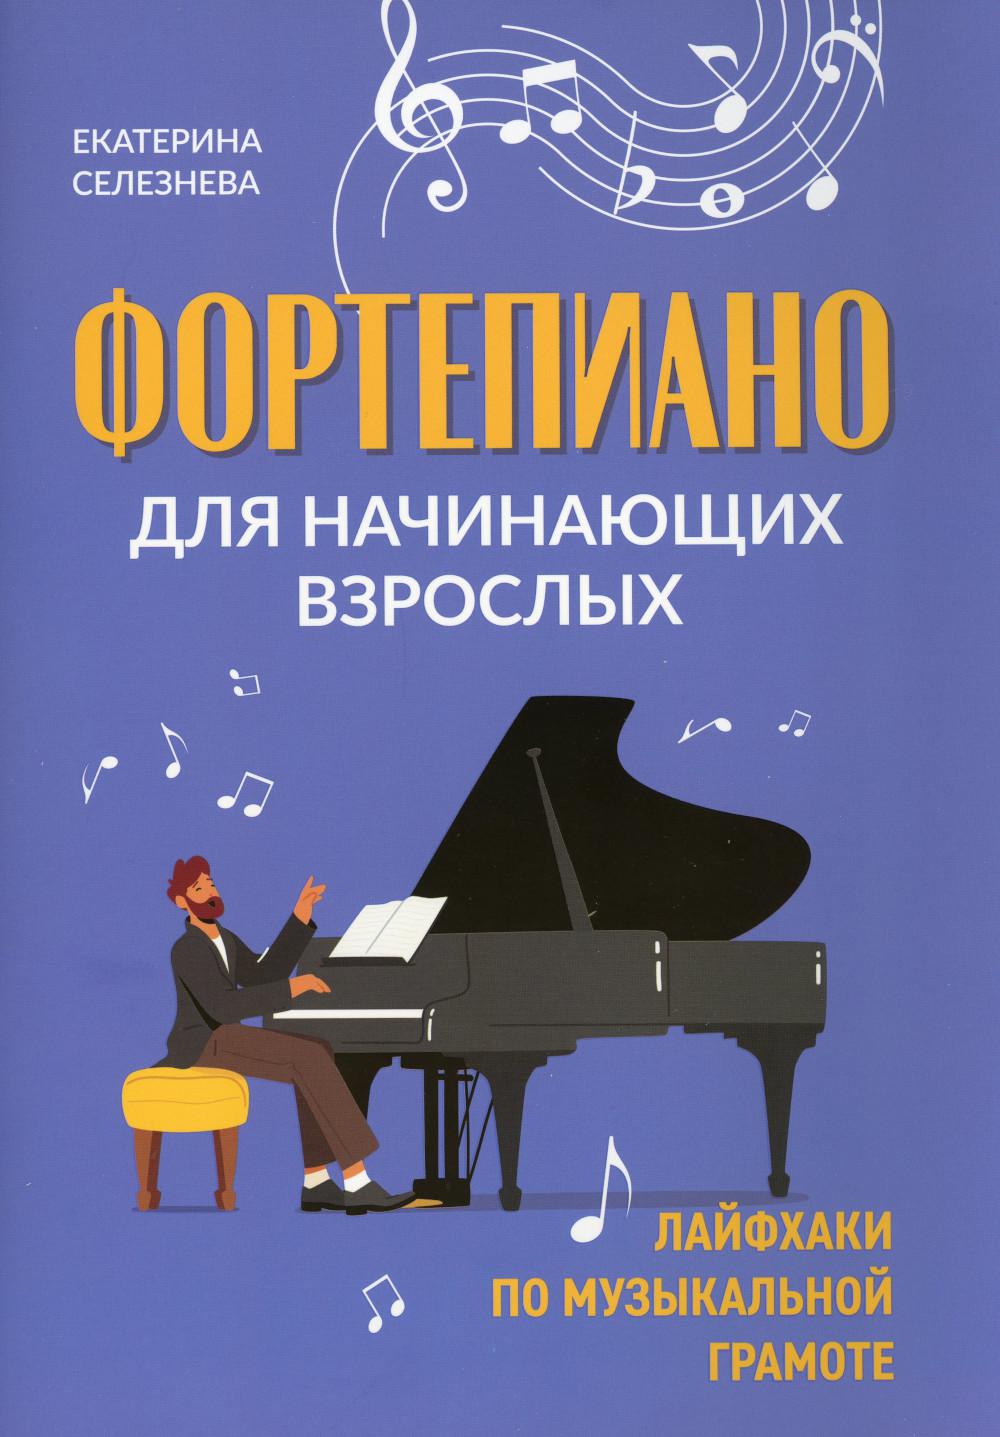 Фортепиано для начинающих взрослых: лайфхаки по музыкальной грамоте. 2-е изд